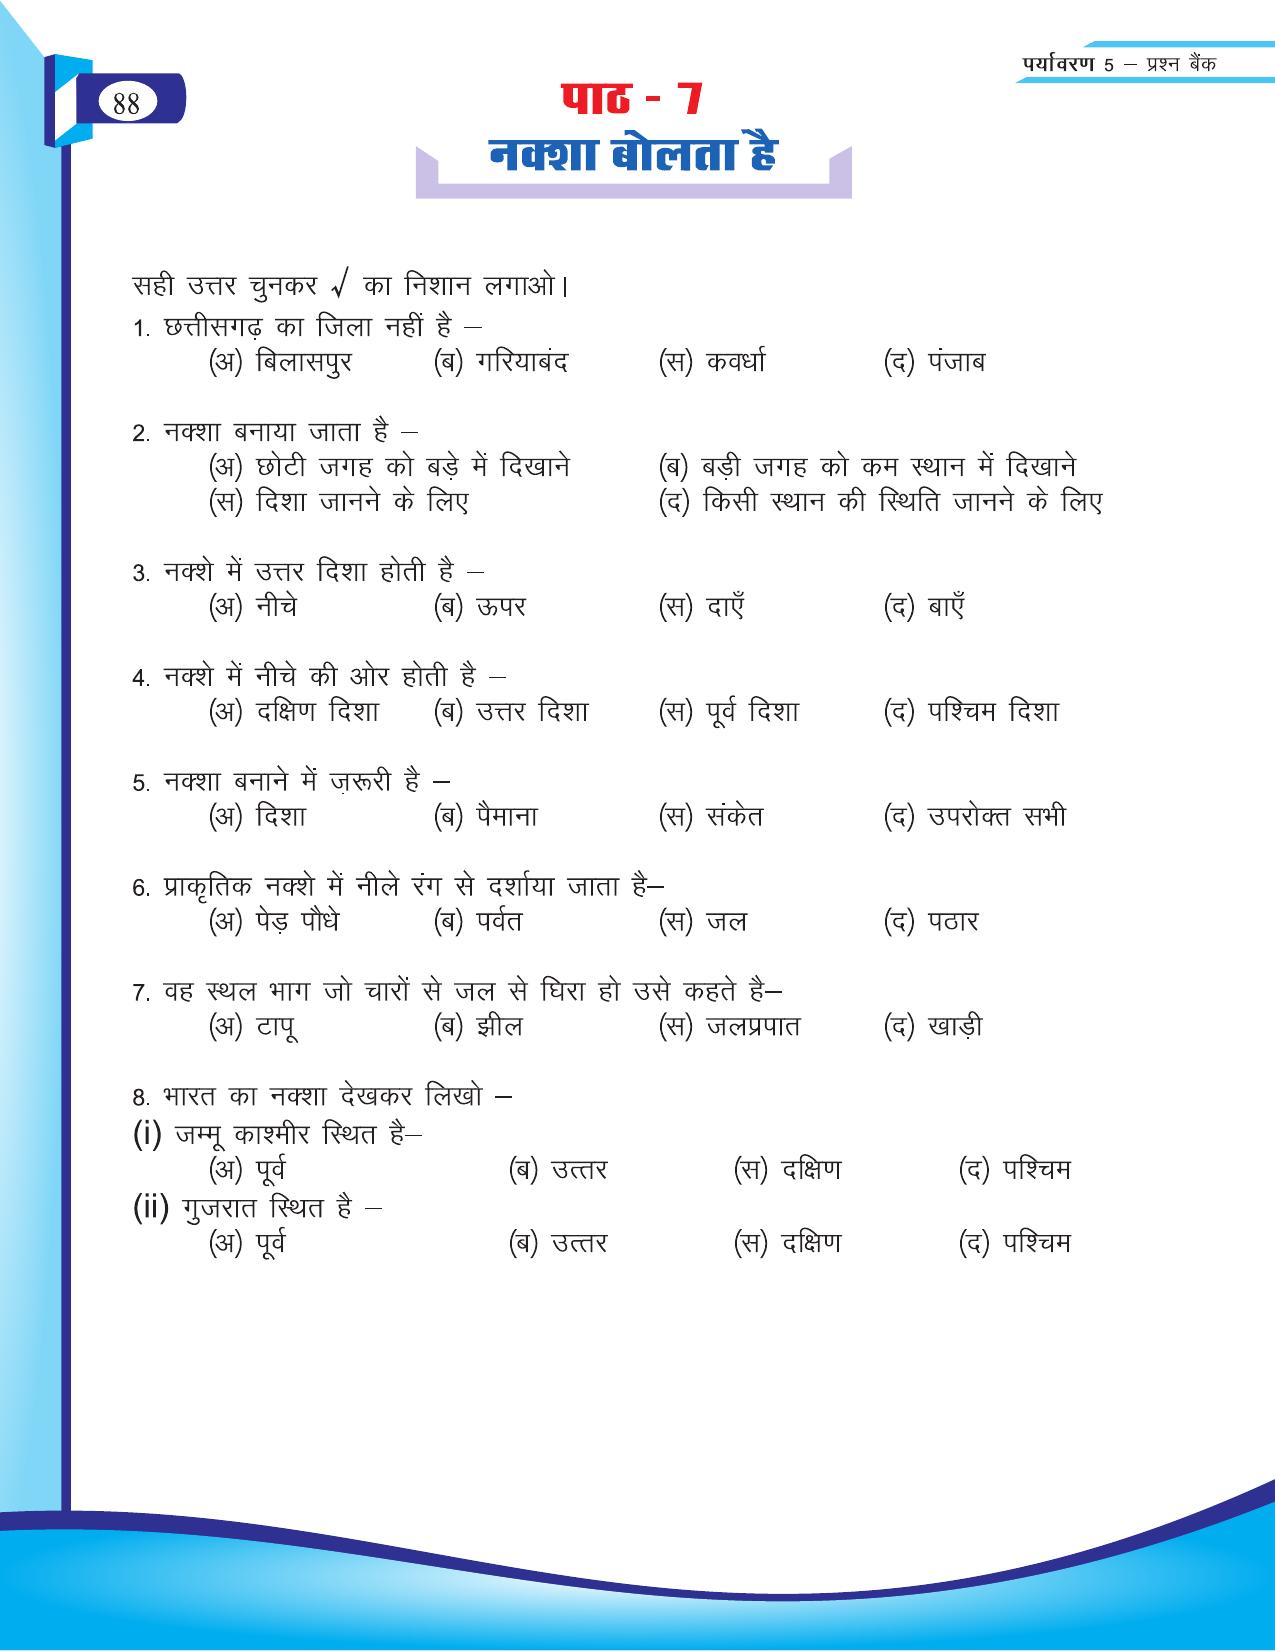 Chhattisgarh Board Class 5 EVS Question Bank 2015-16 - Page 14